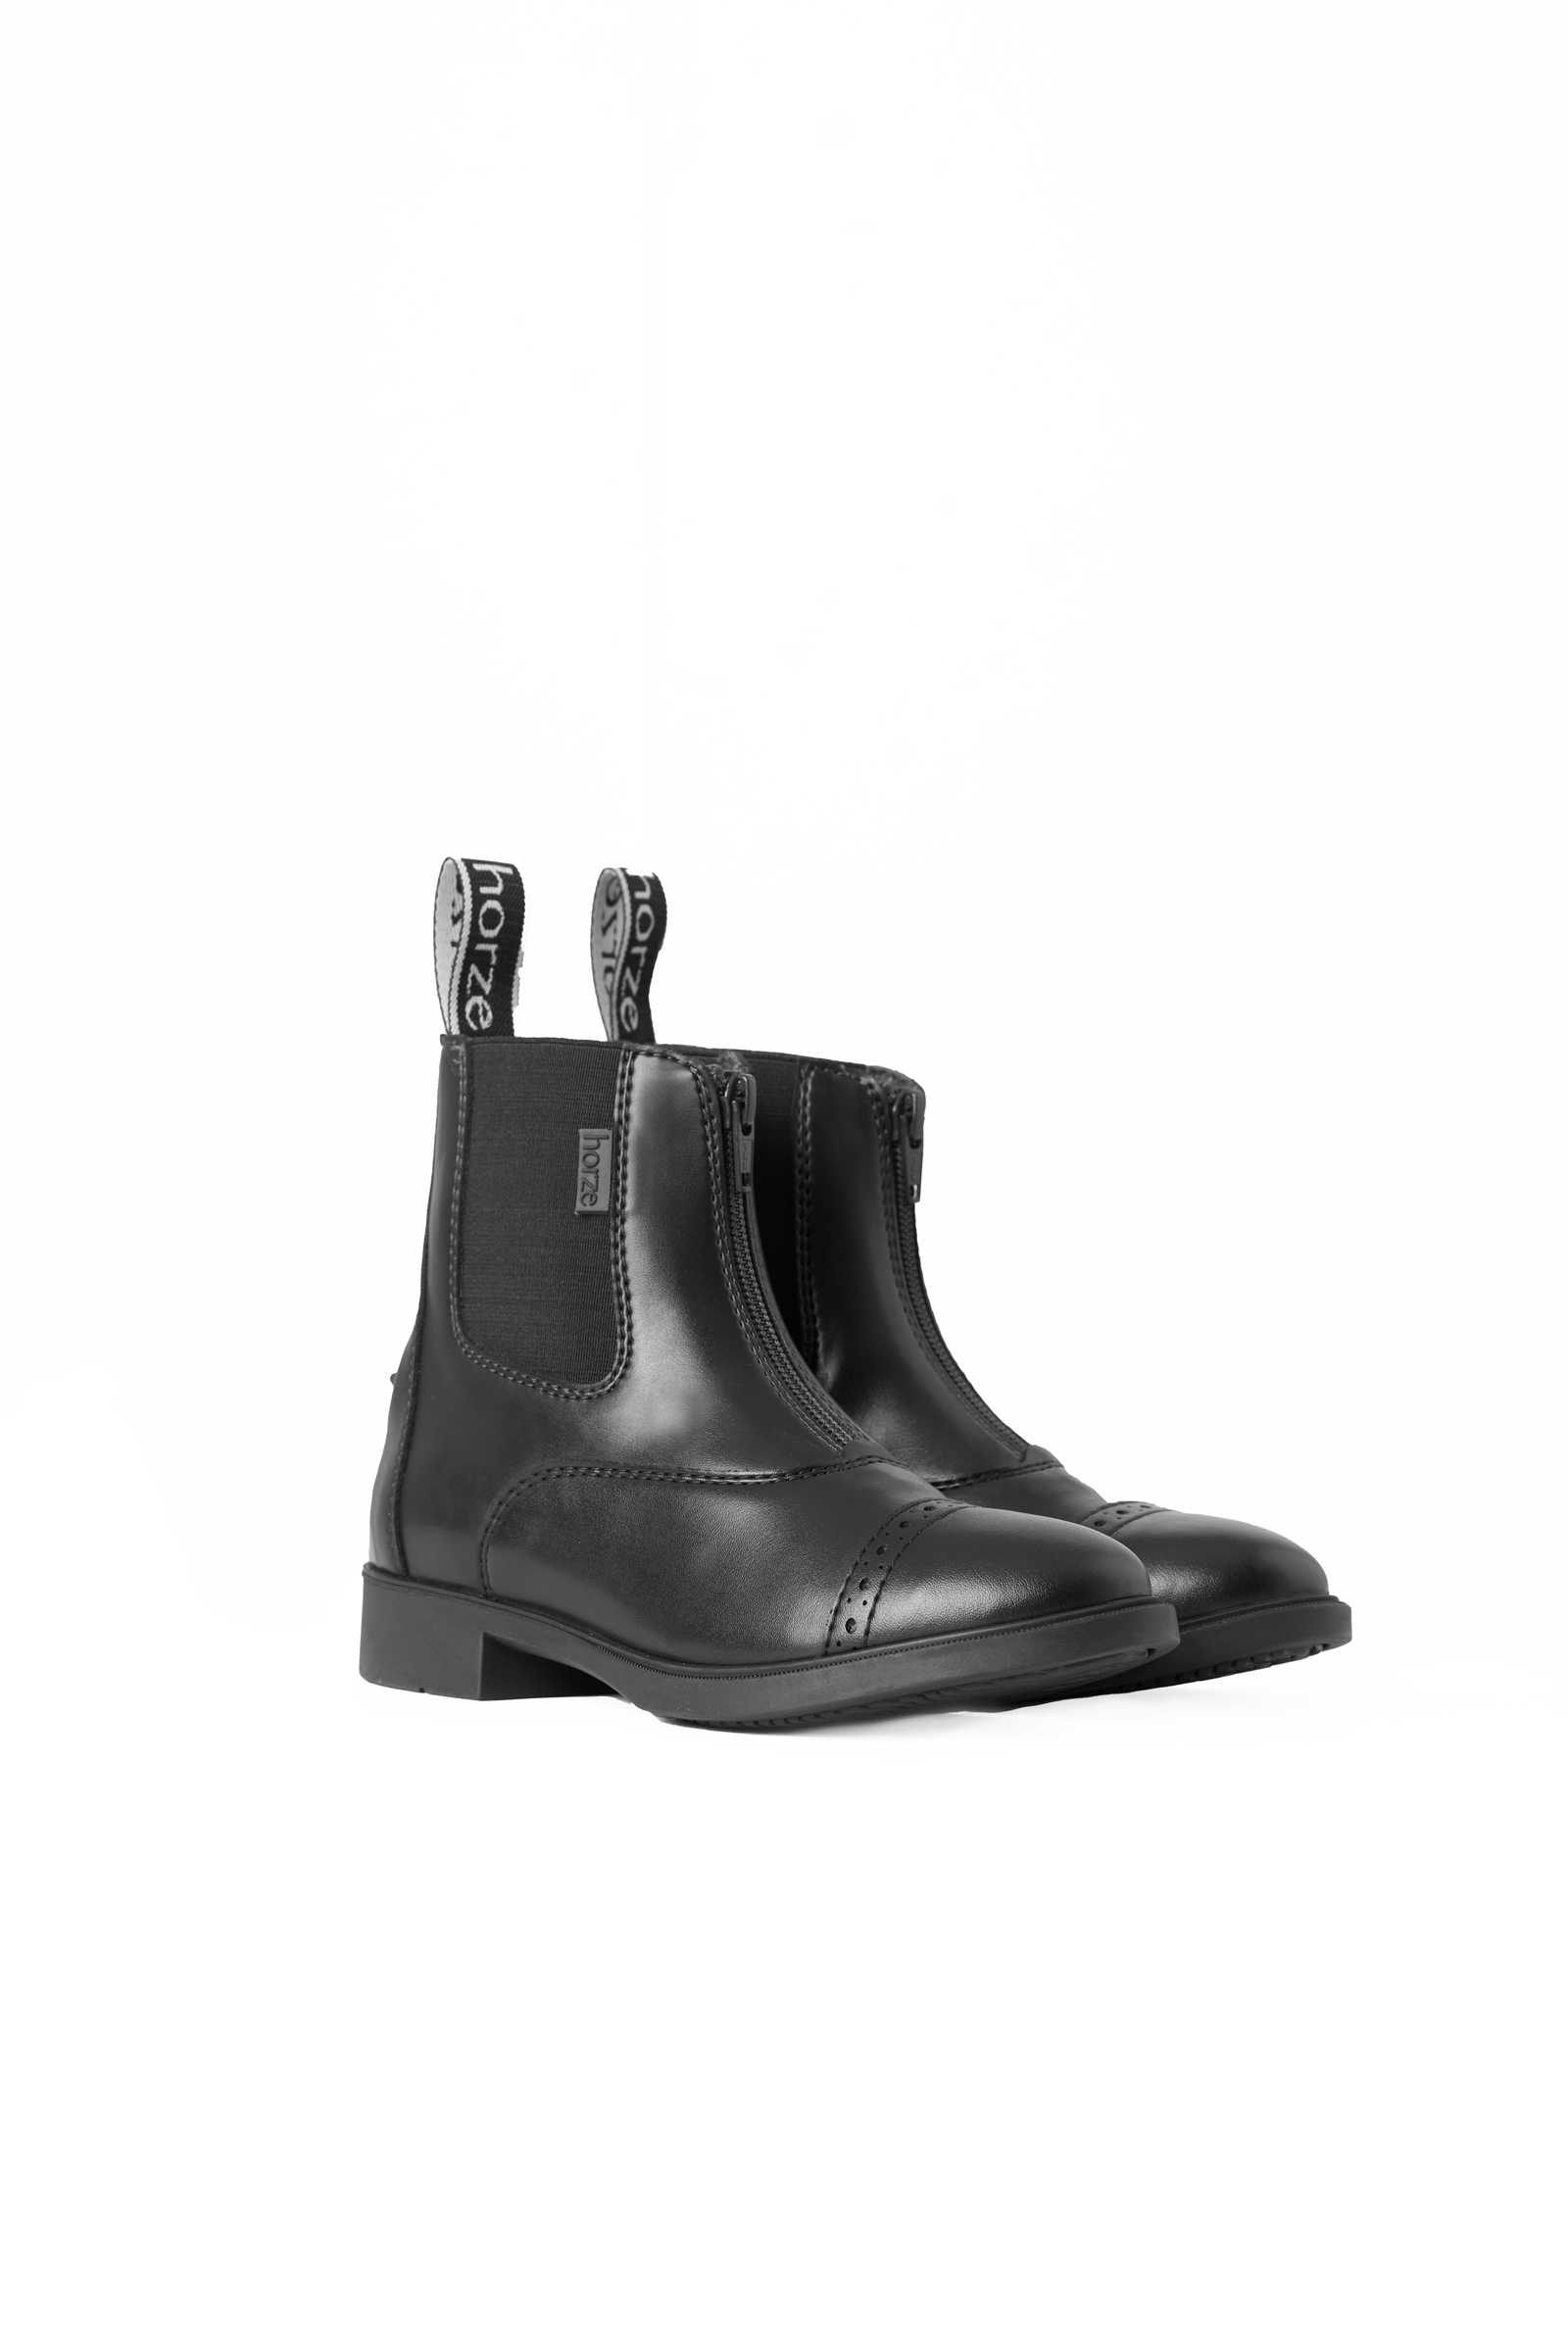 Buy Horze Wexford Women's Front-Zip Boots | horze.com